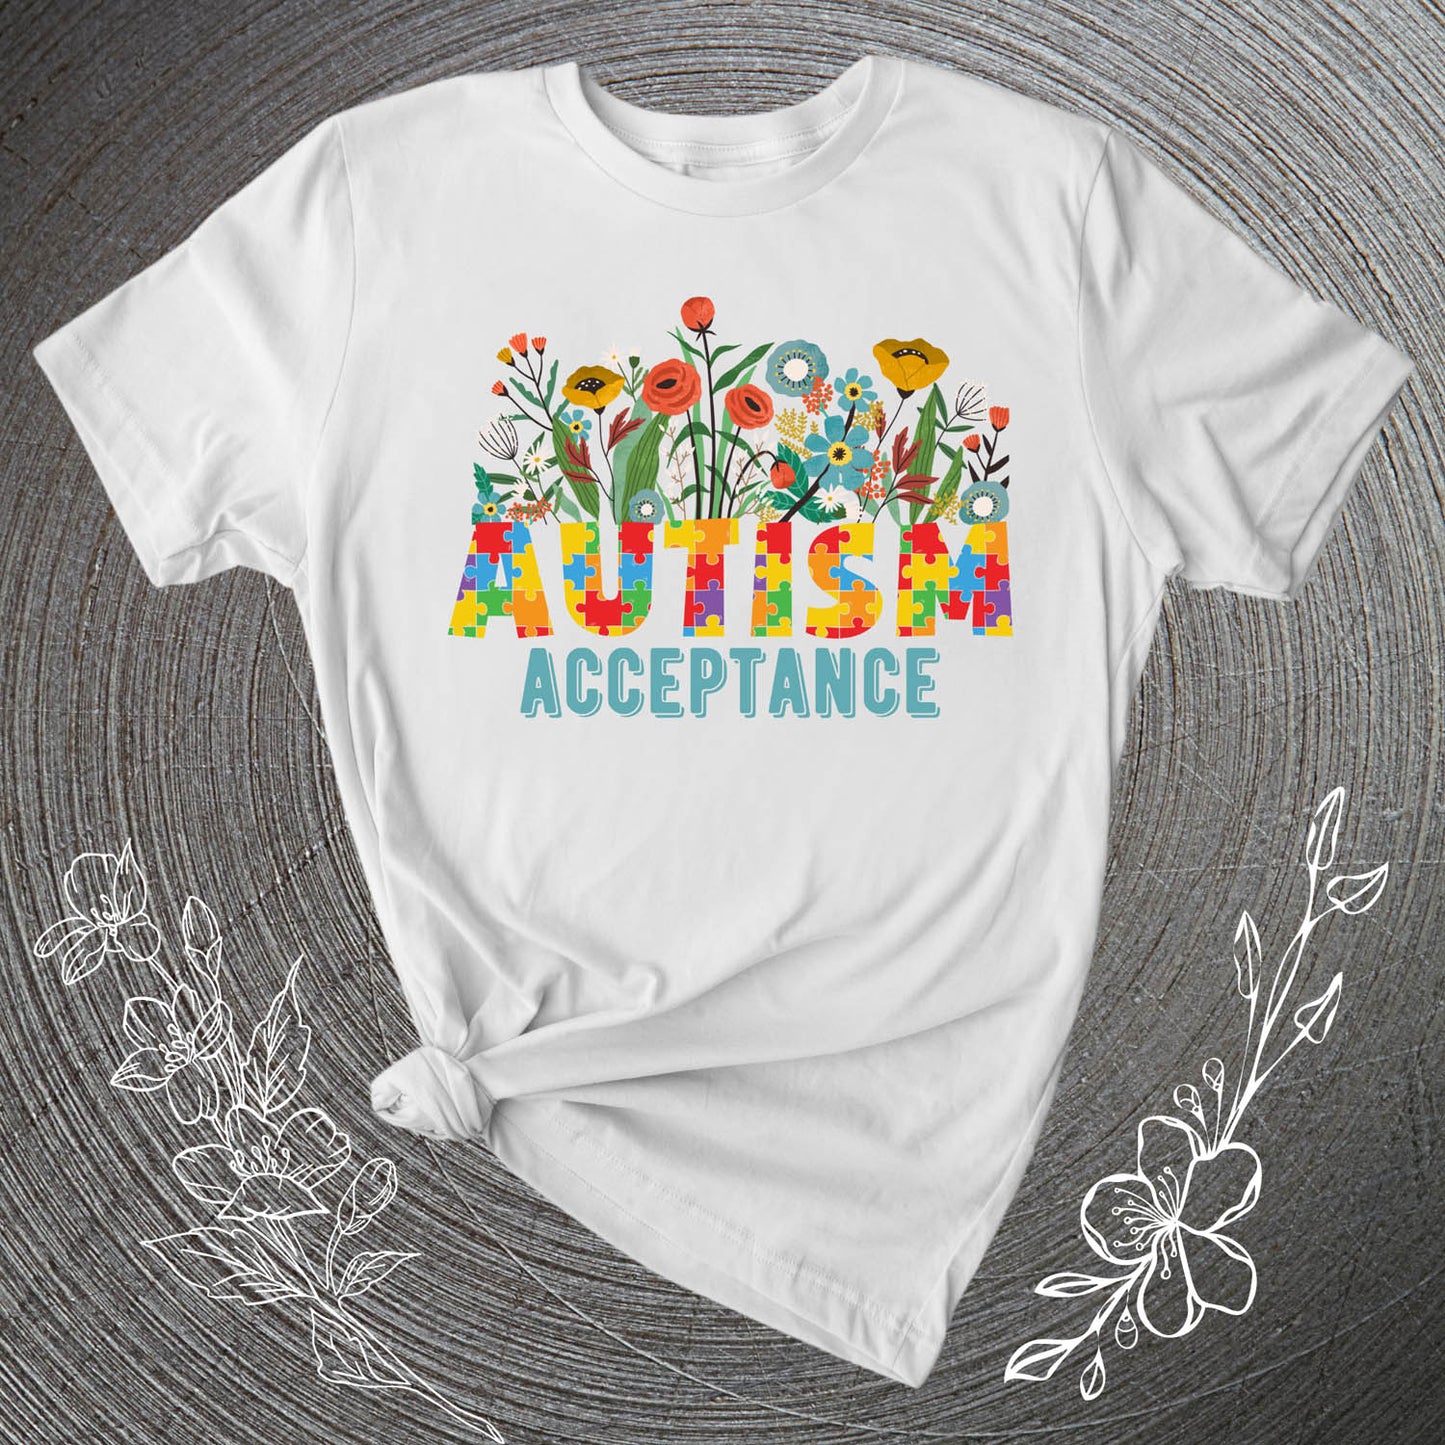 Acceptance T-Shirt